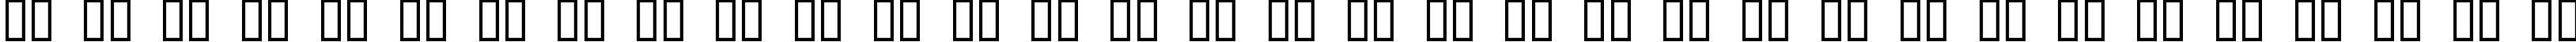 Пример написания русского алфавита шрифтом Awaken